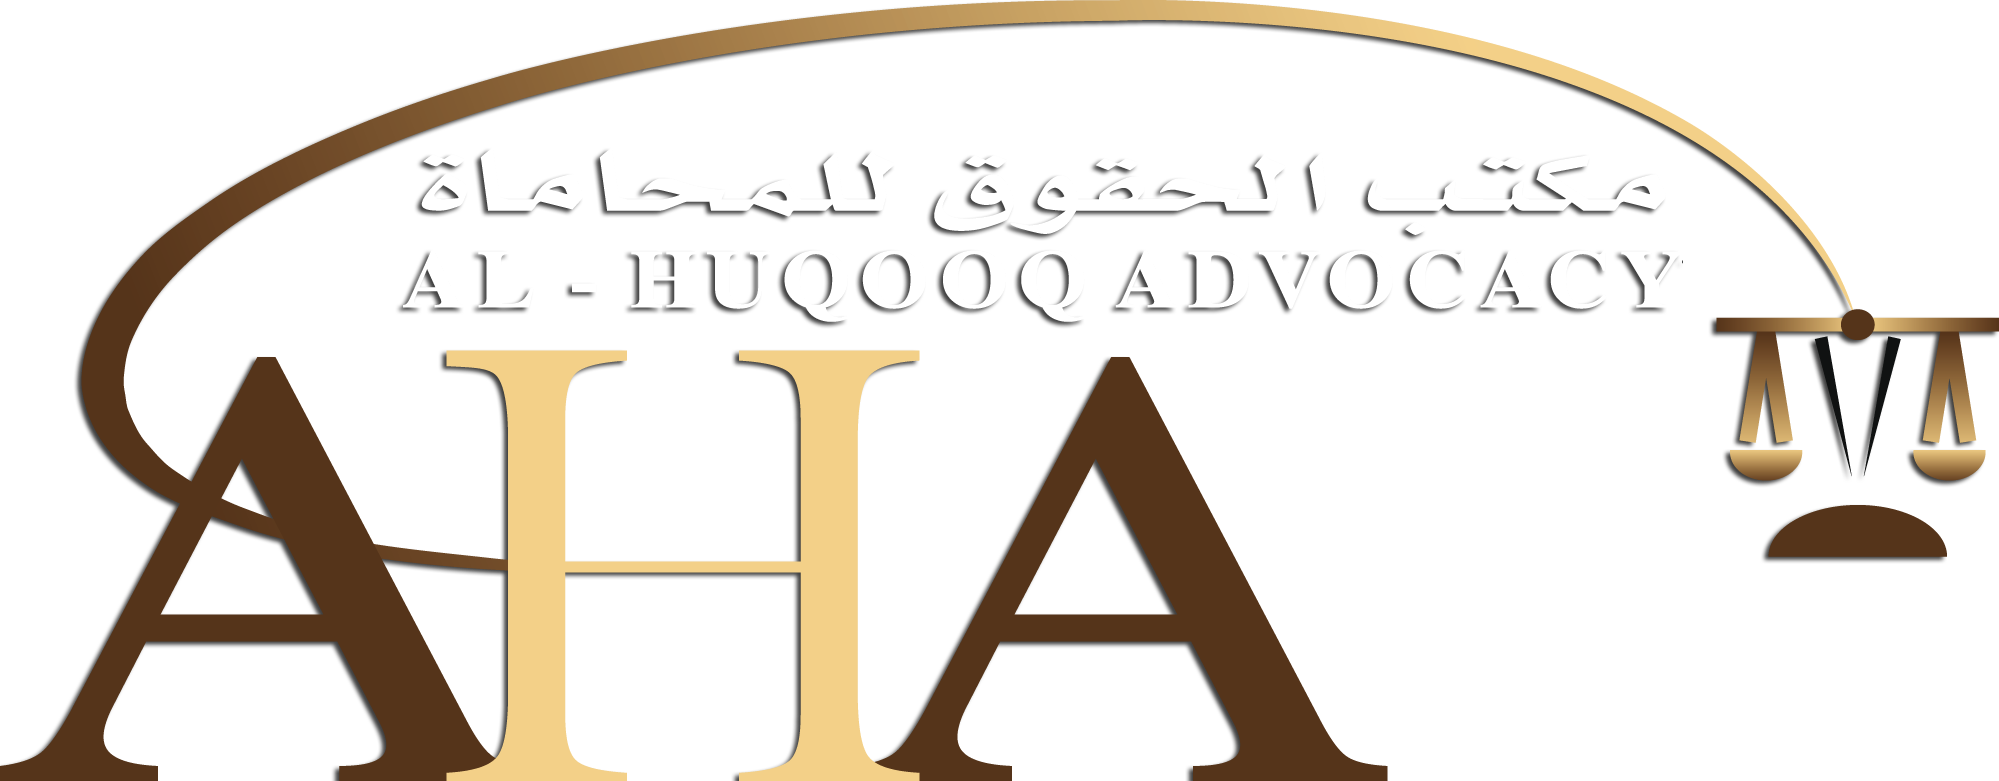 Al huqooq advocacy advocates. Legal clipart law ethics